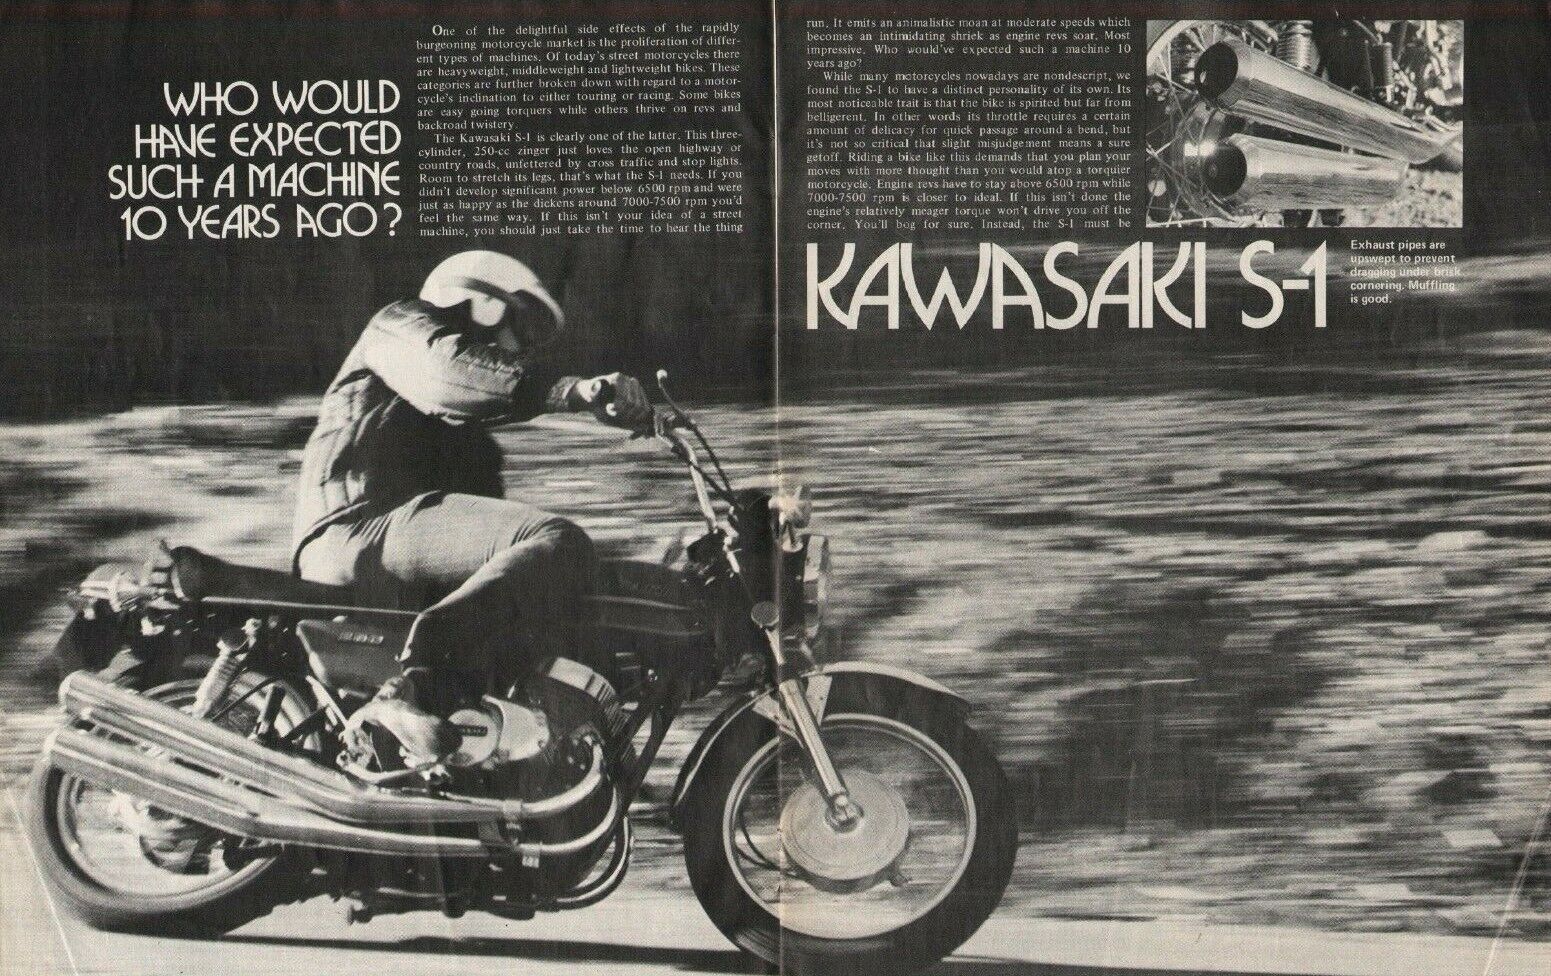 1973 Kawasaki S-1 - 4-Page Vintage Motorcycle Article